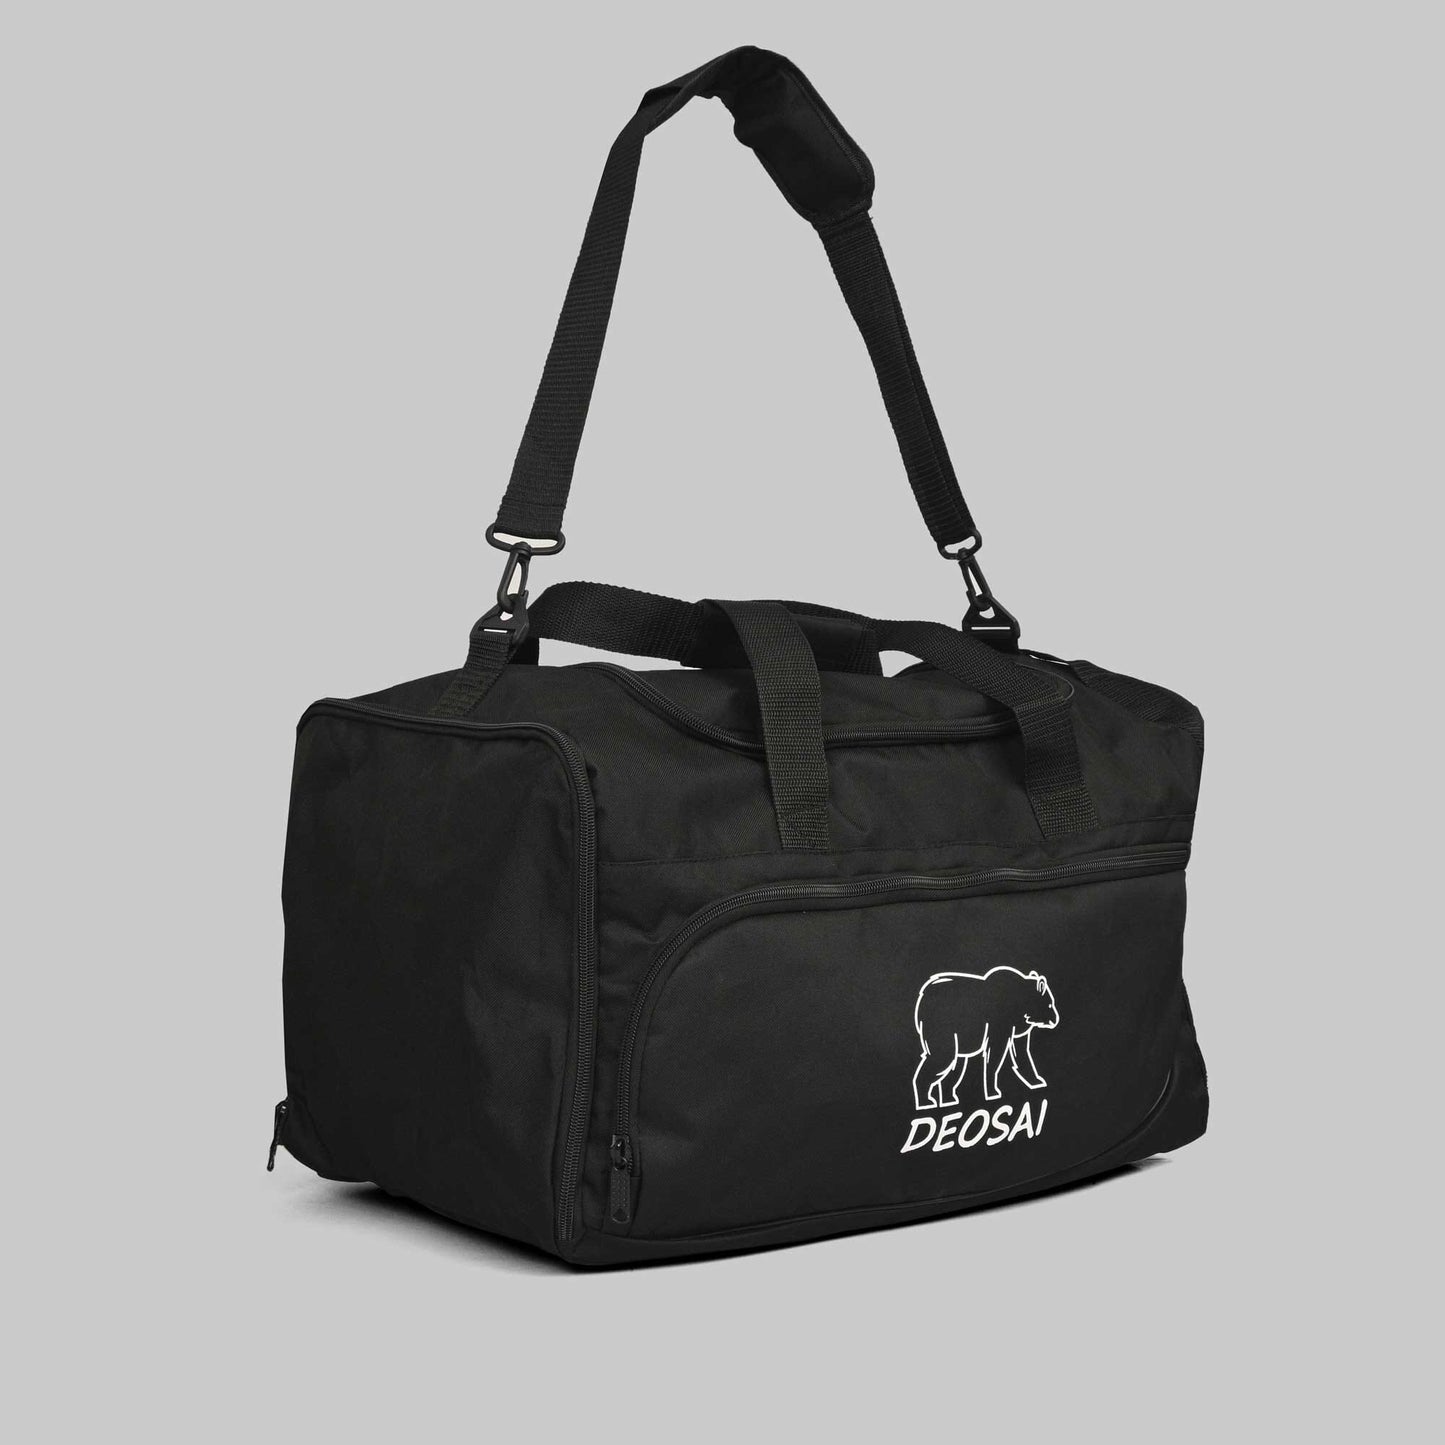 Deosai Printed Large Duffle/Gym Bag bag AMU 